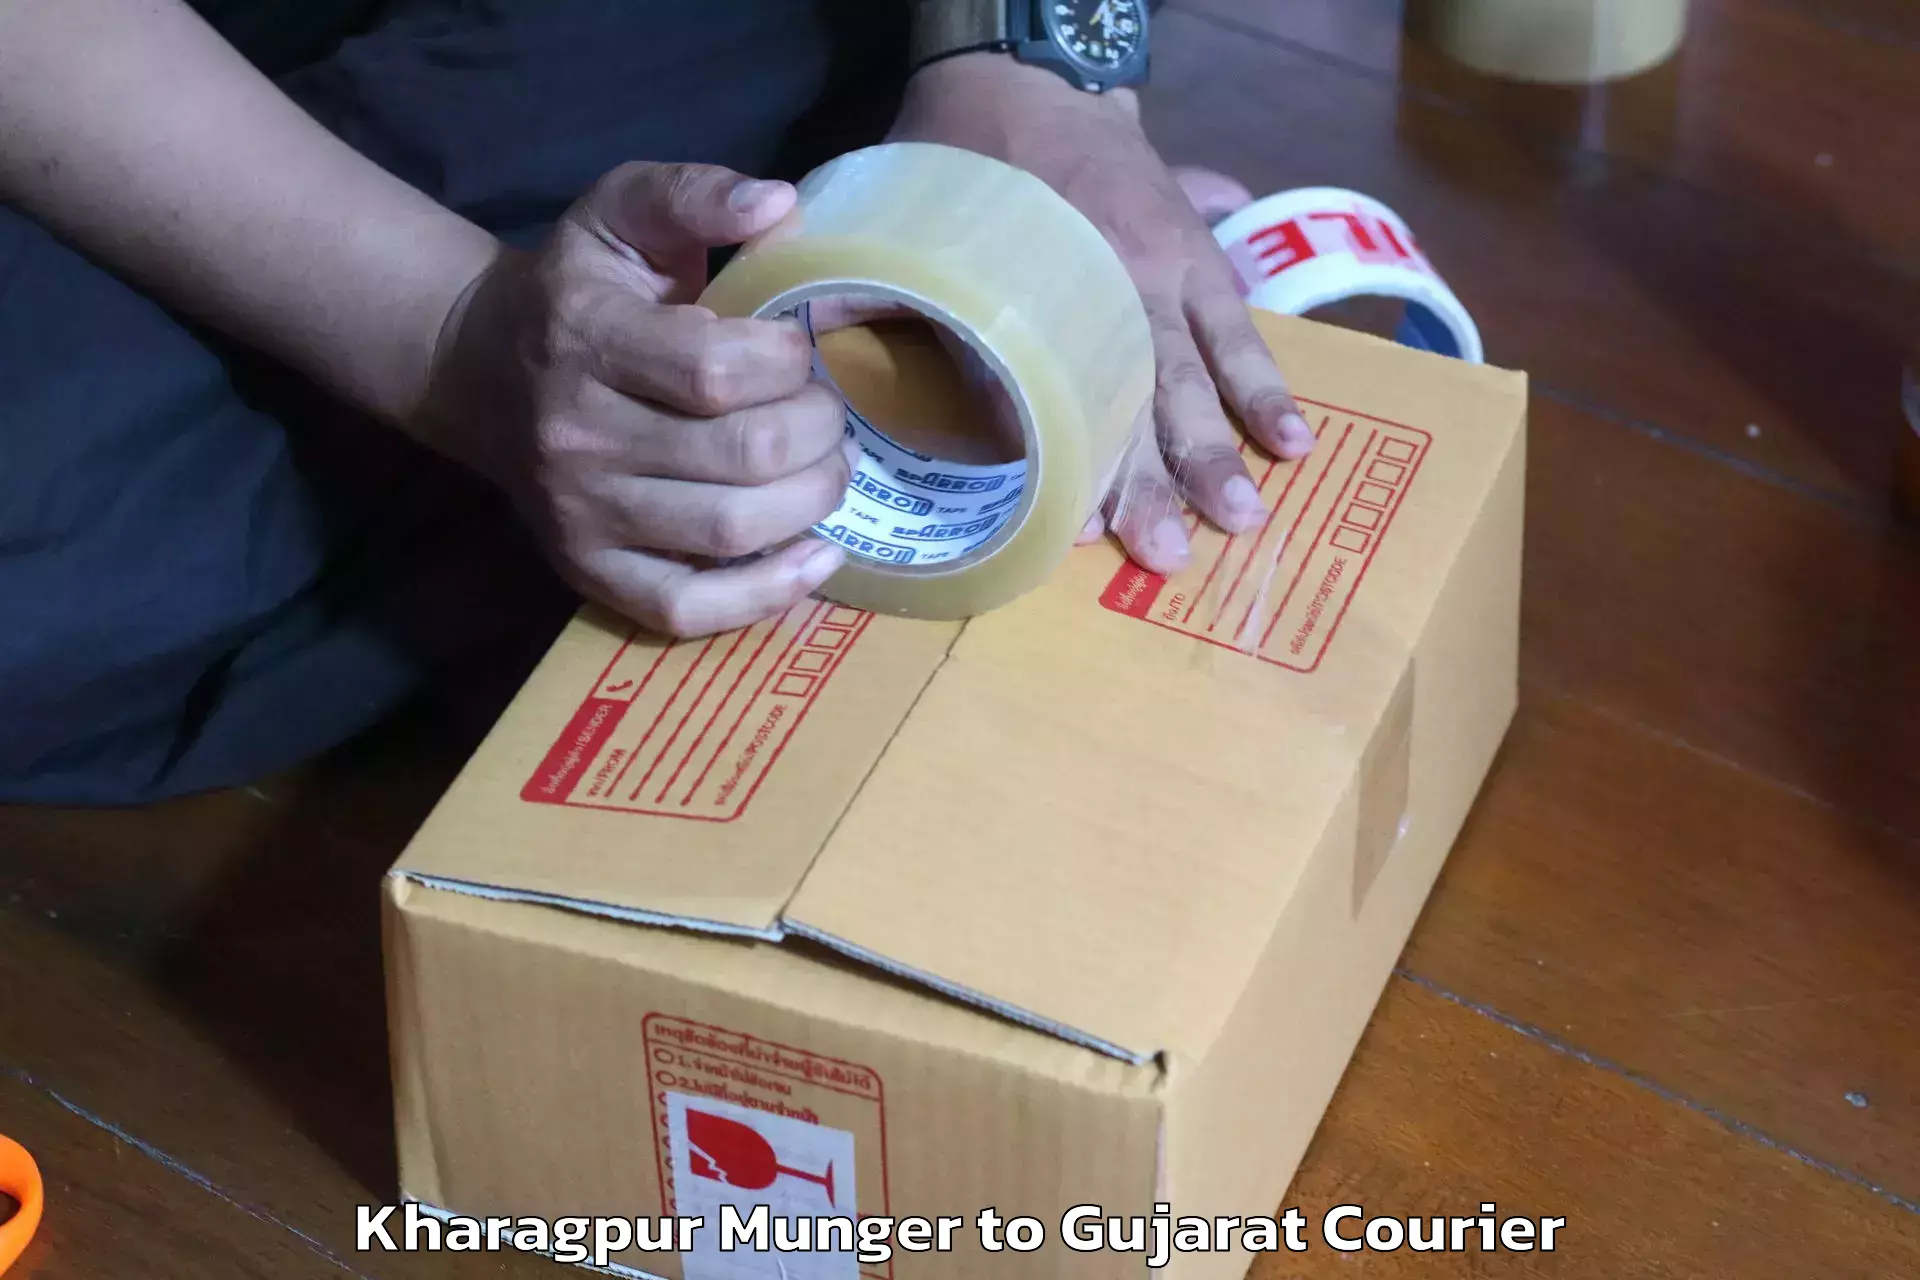 Furniture moving service Kharagpur Munger to Gujarat